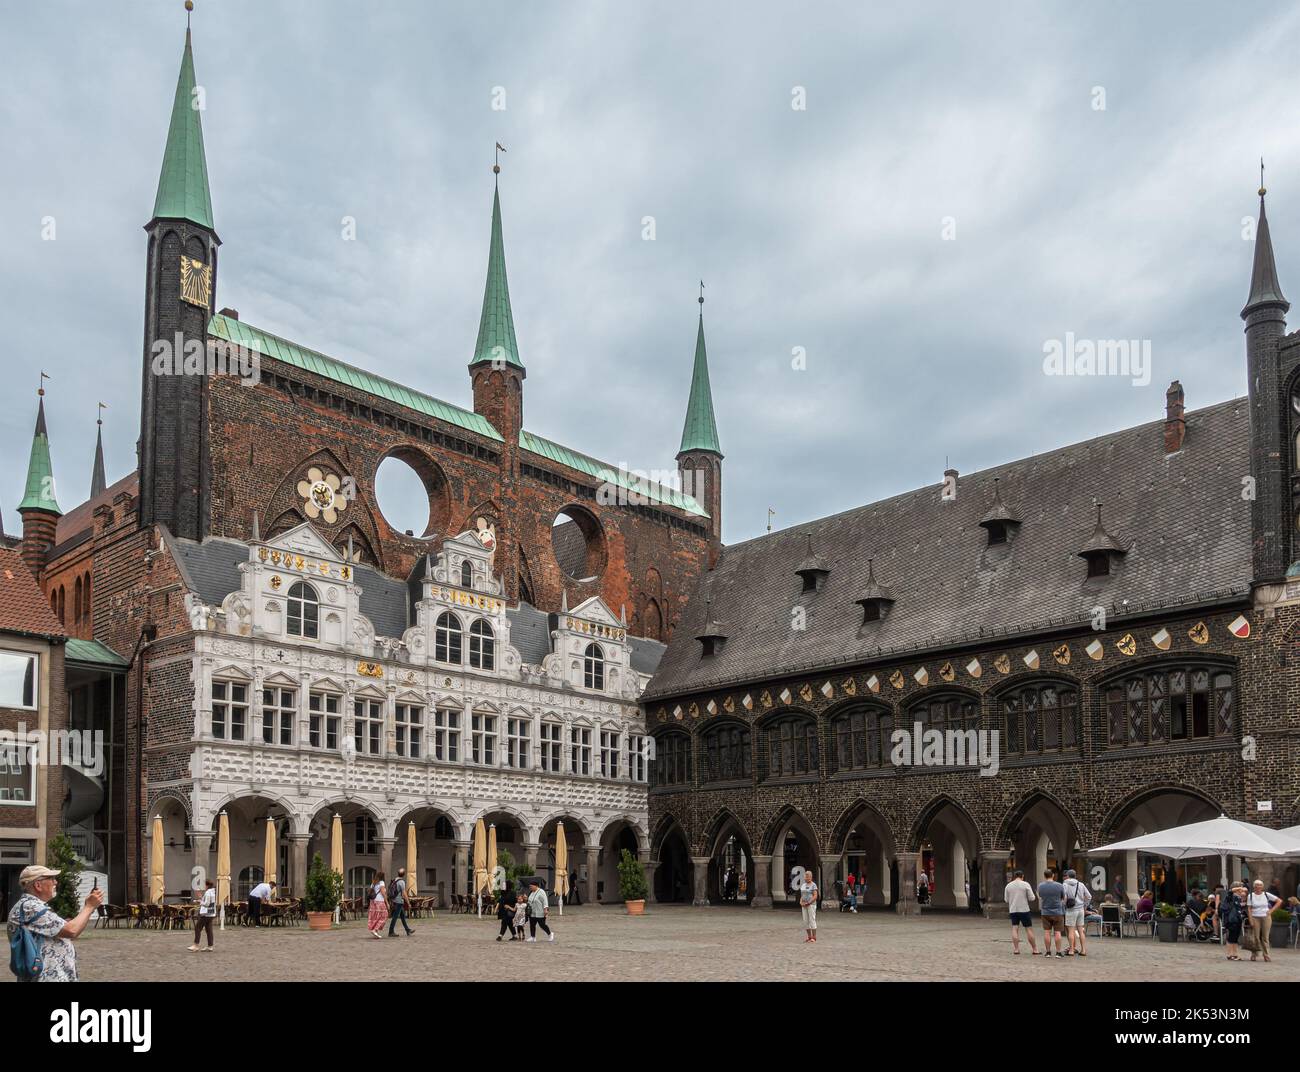 Germania, Lubecca - 13 luglio 2022: Hiistoric Rathaus o municipio in angolo NE di Marktplatz, piazza del mercato, sotto il paesaggio grigio nuvolato con persone a piedi a. Foto Stock